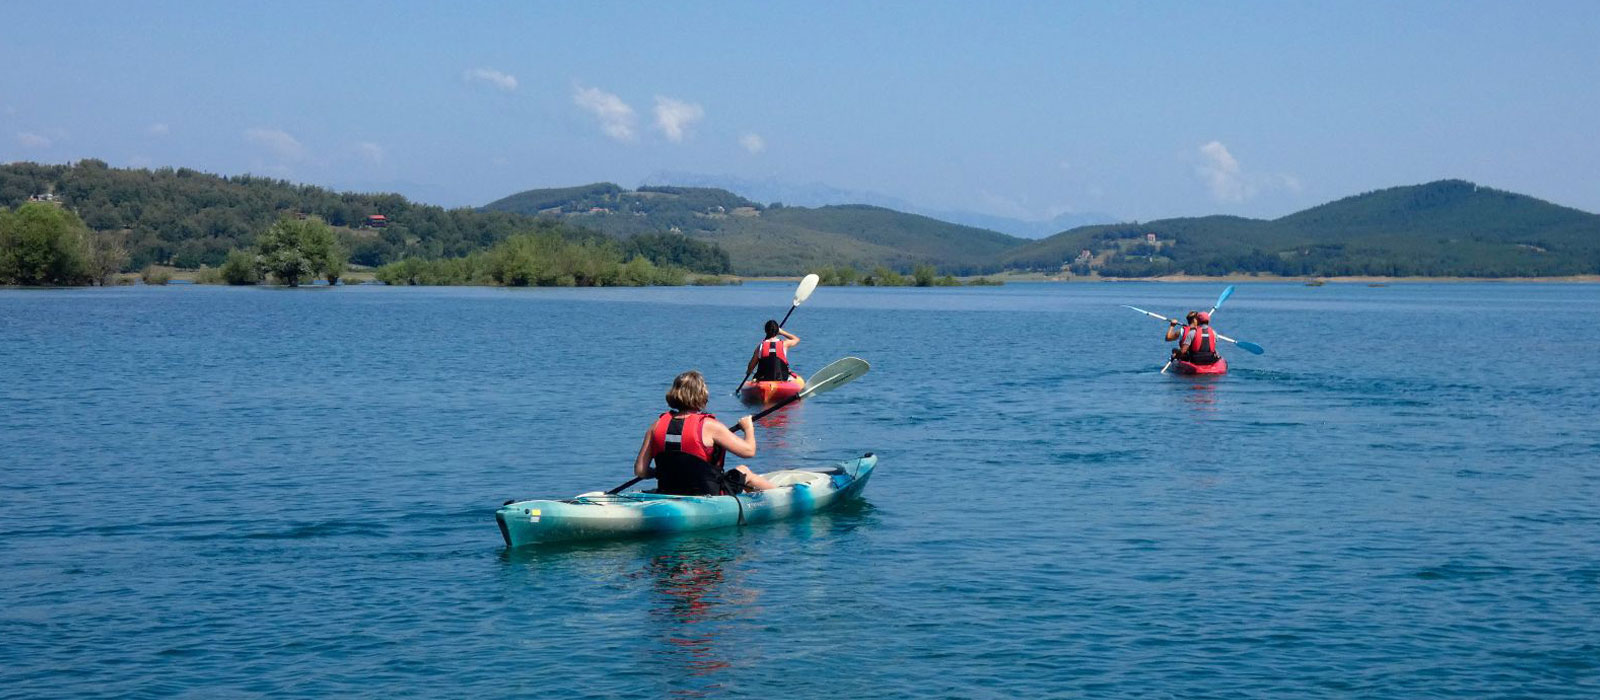 Κανό - καγιάκ στη Λίμνη Πλαστήρα - kayak on Lake Plastiras